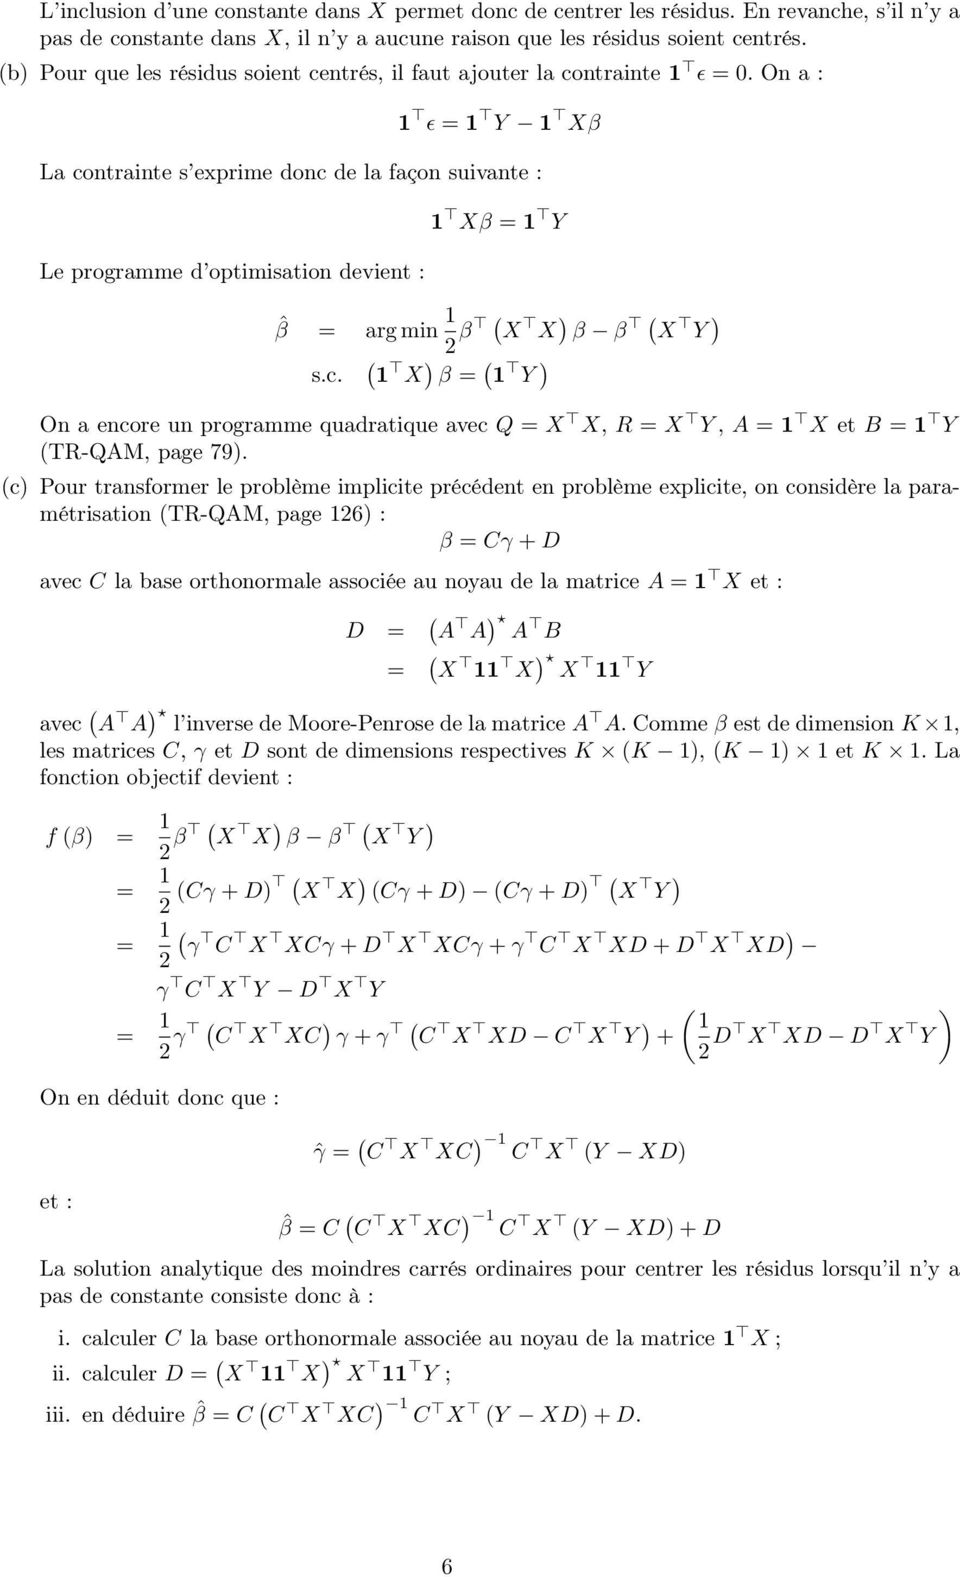 On a : 1 ϵ = 1 Y 1 Xβ La conraine s exprime donc de la façon suivane : Le programme d opimisaion devien : 1 Xβ = 1 Y ˆβ = arg min 1 2 β X X β β X Y s.c. 1 X β = 1 Y On a encore un programme quadraique avec Q = X X, R = X Y, A = 1 X e B = 1 Y TR-QAM, page 79.